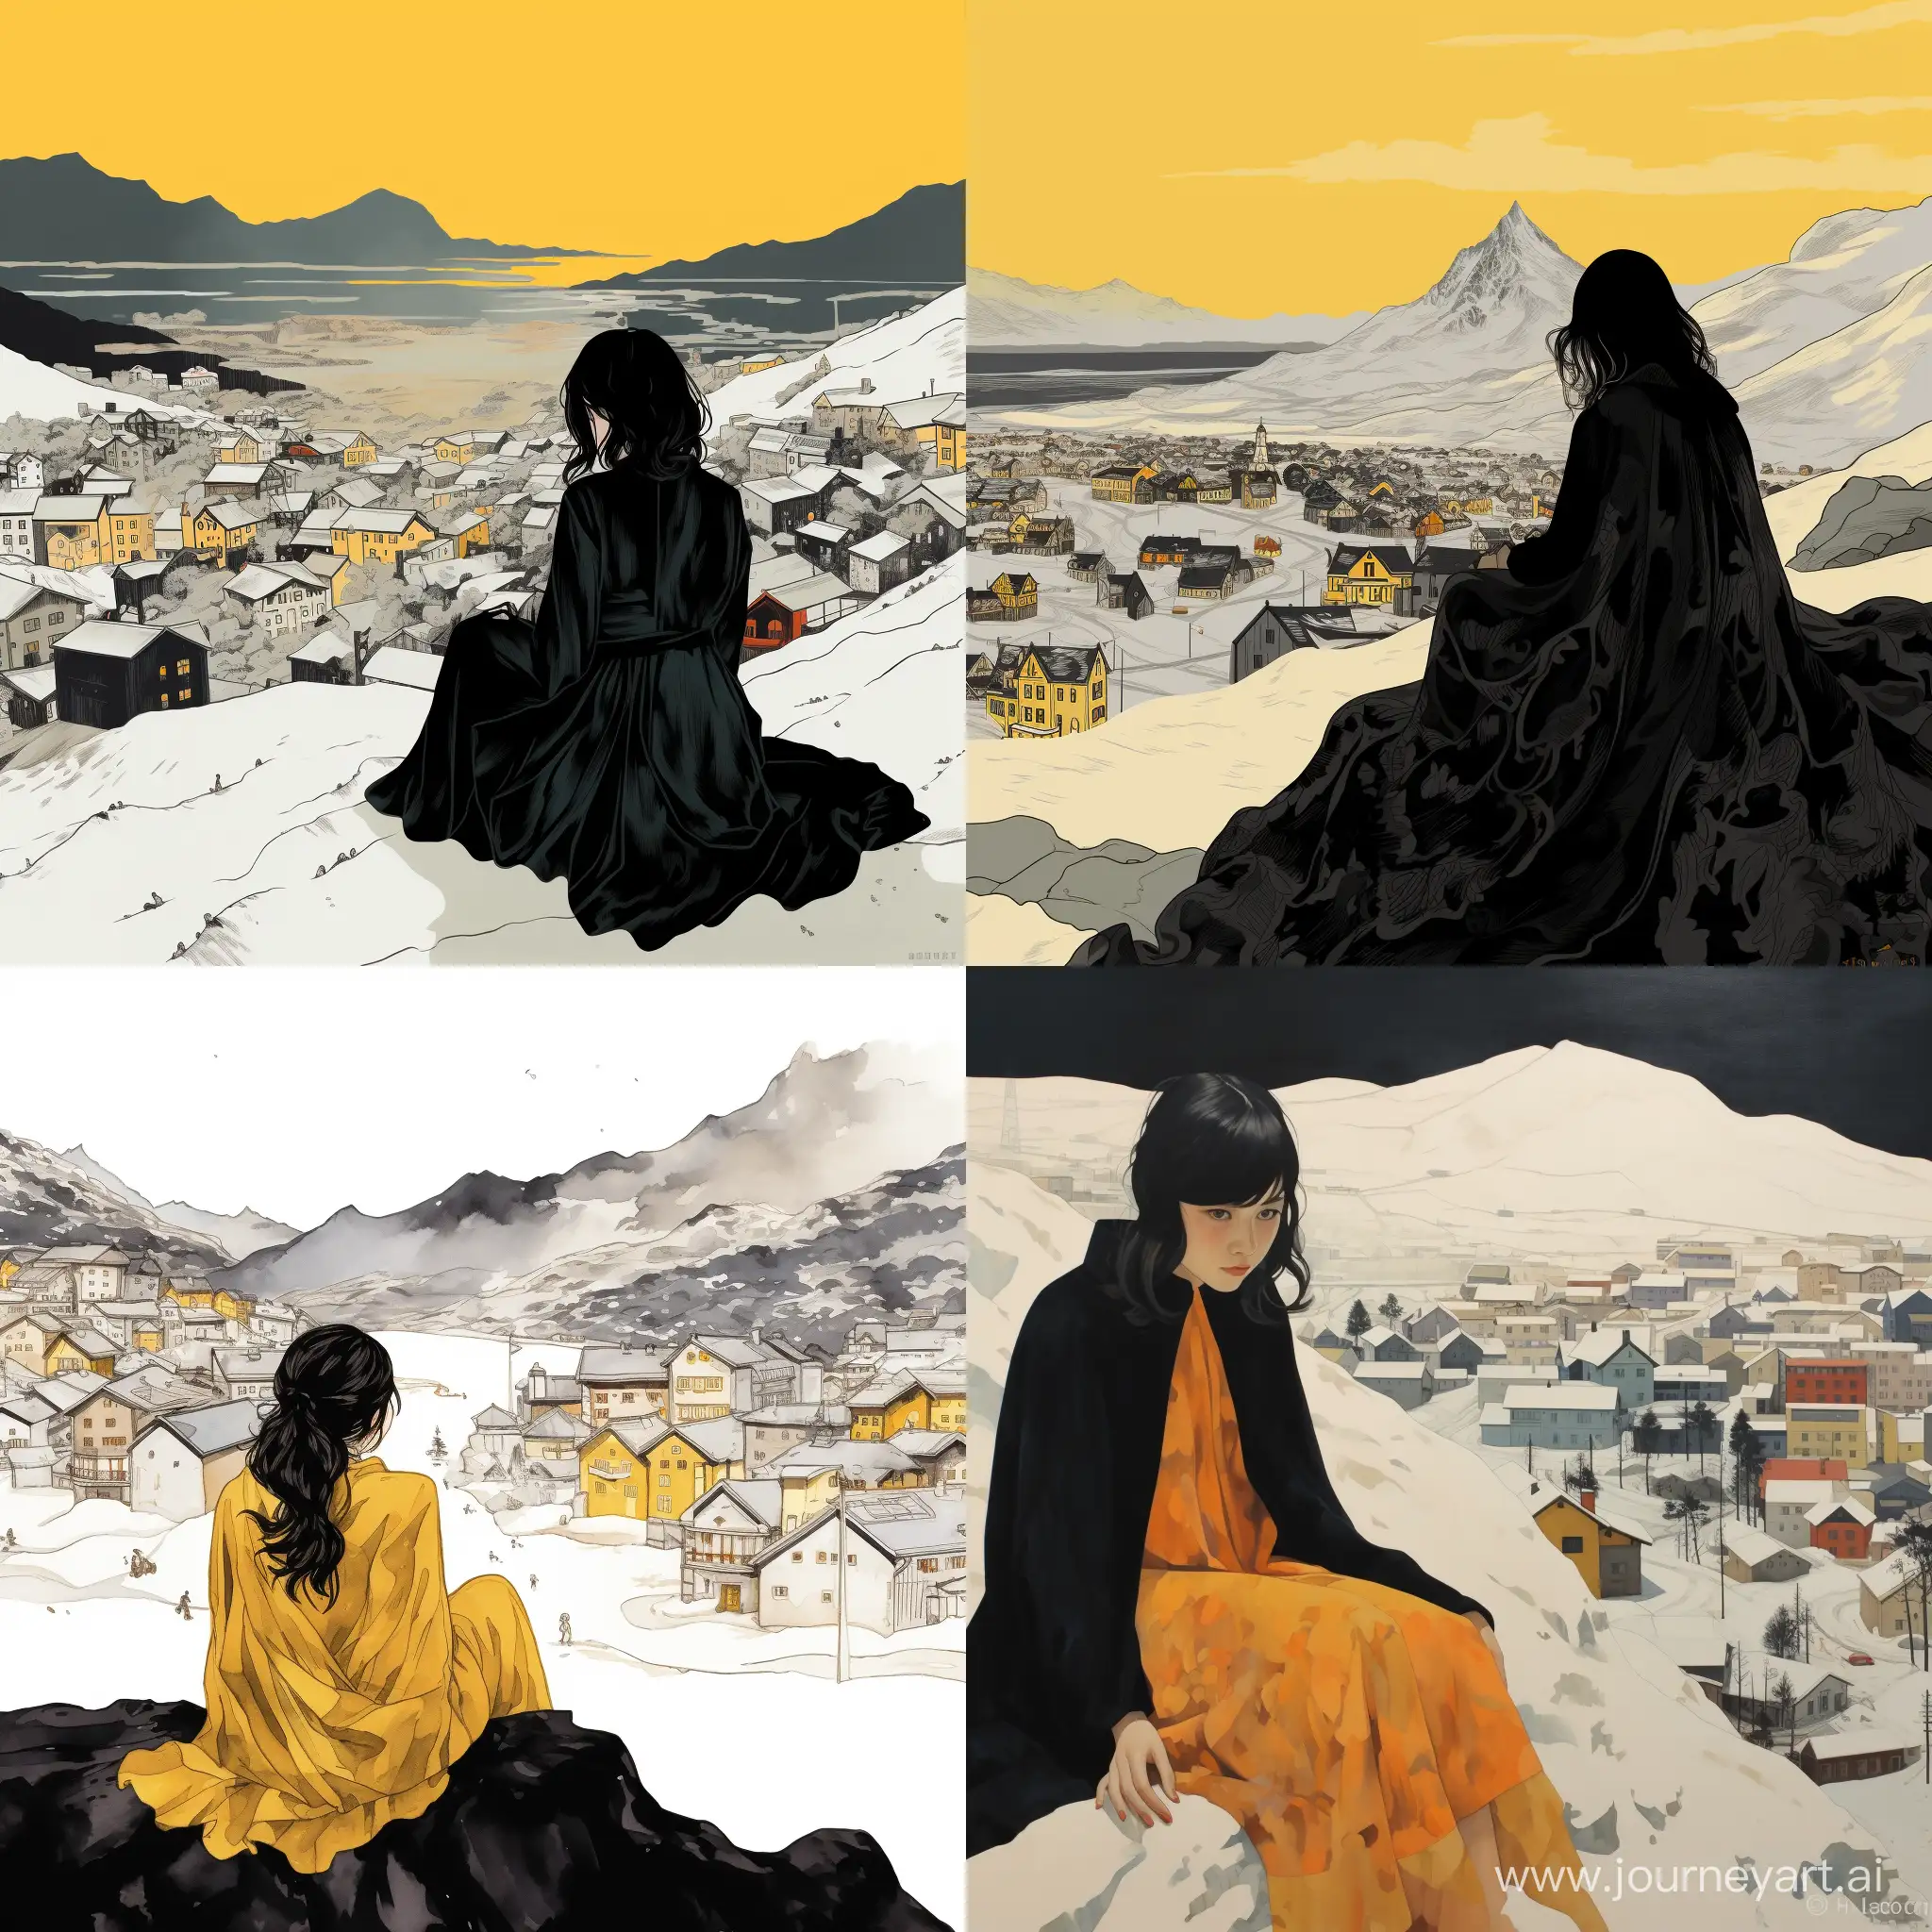 Solitary-Figure-in-Yellow-Dress-Overlooking-Frozen-City